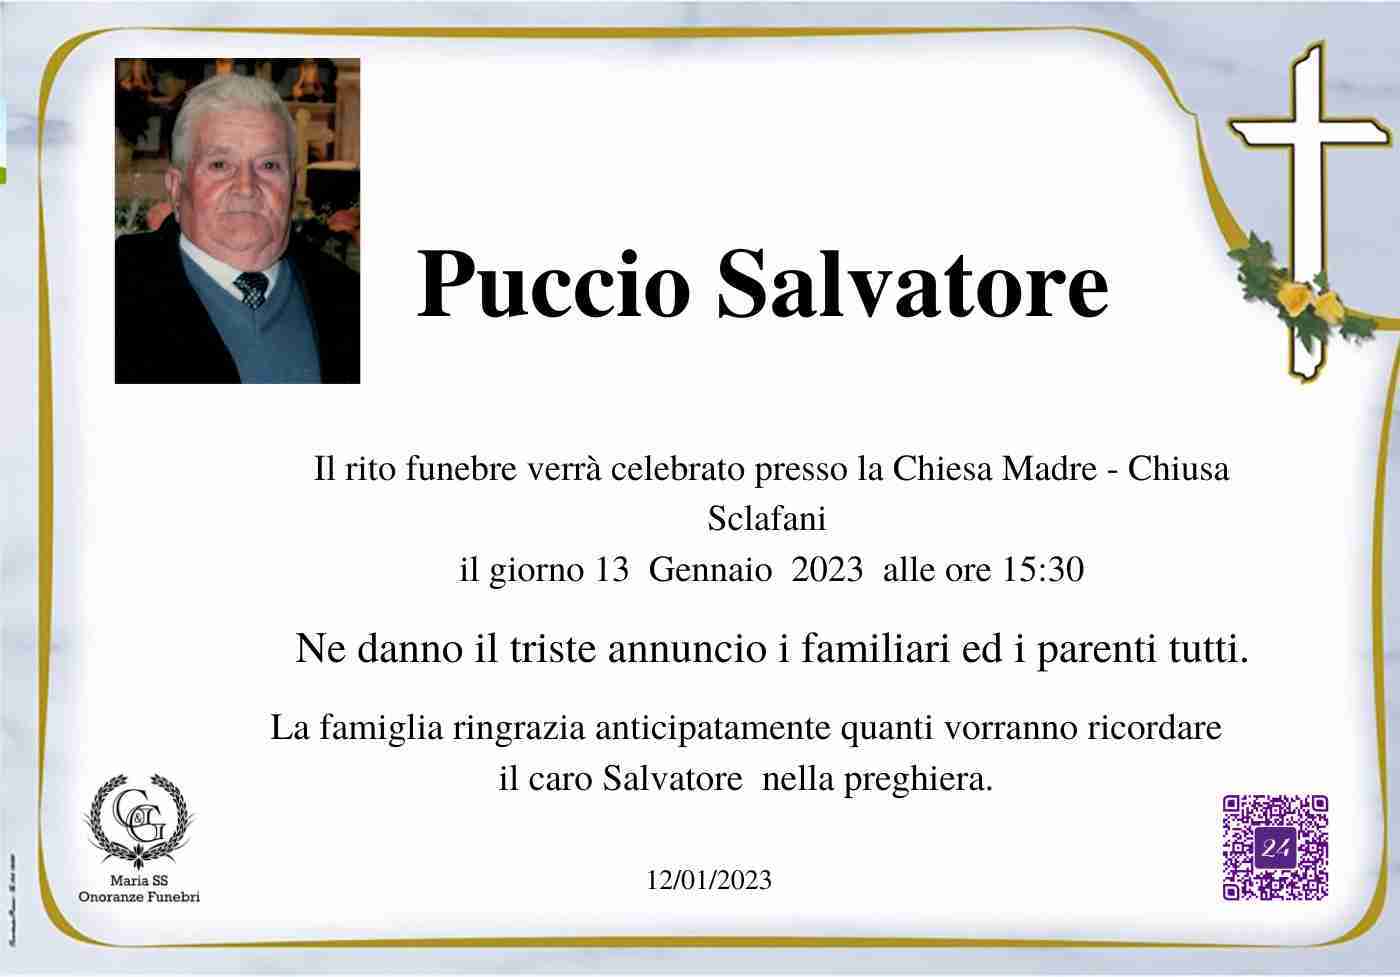 Salvatore Puccio